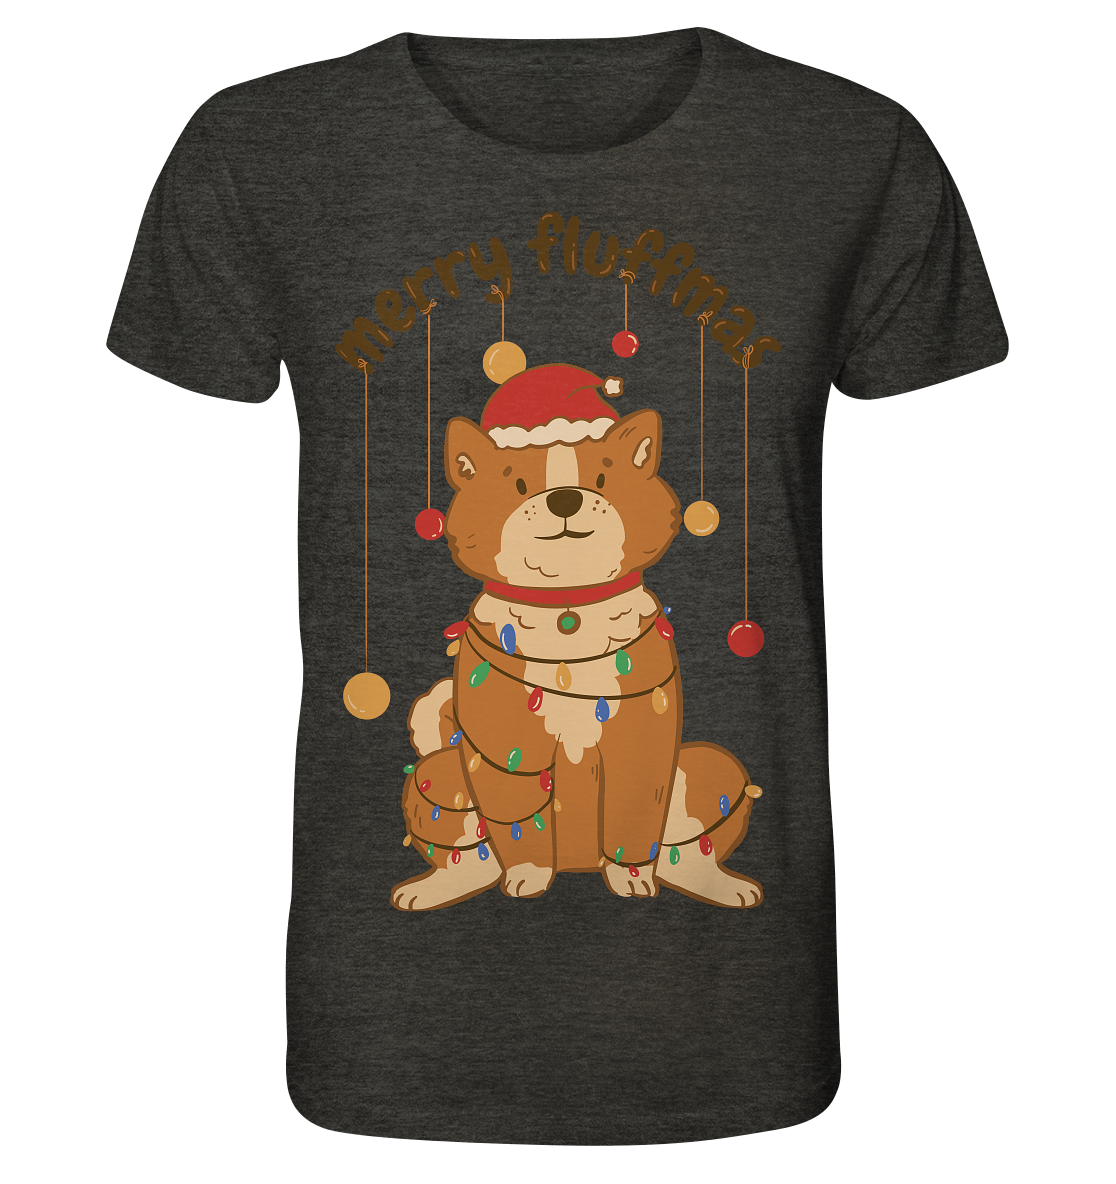 Weihnachtliches Motiv Fun Merry Fluffmas - Organic Shirt (meliert)